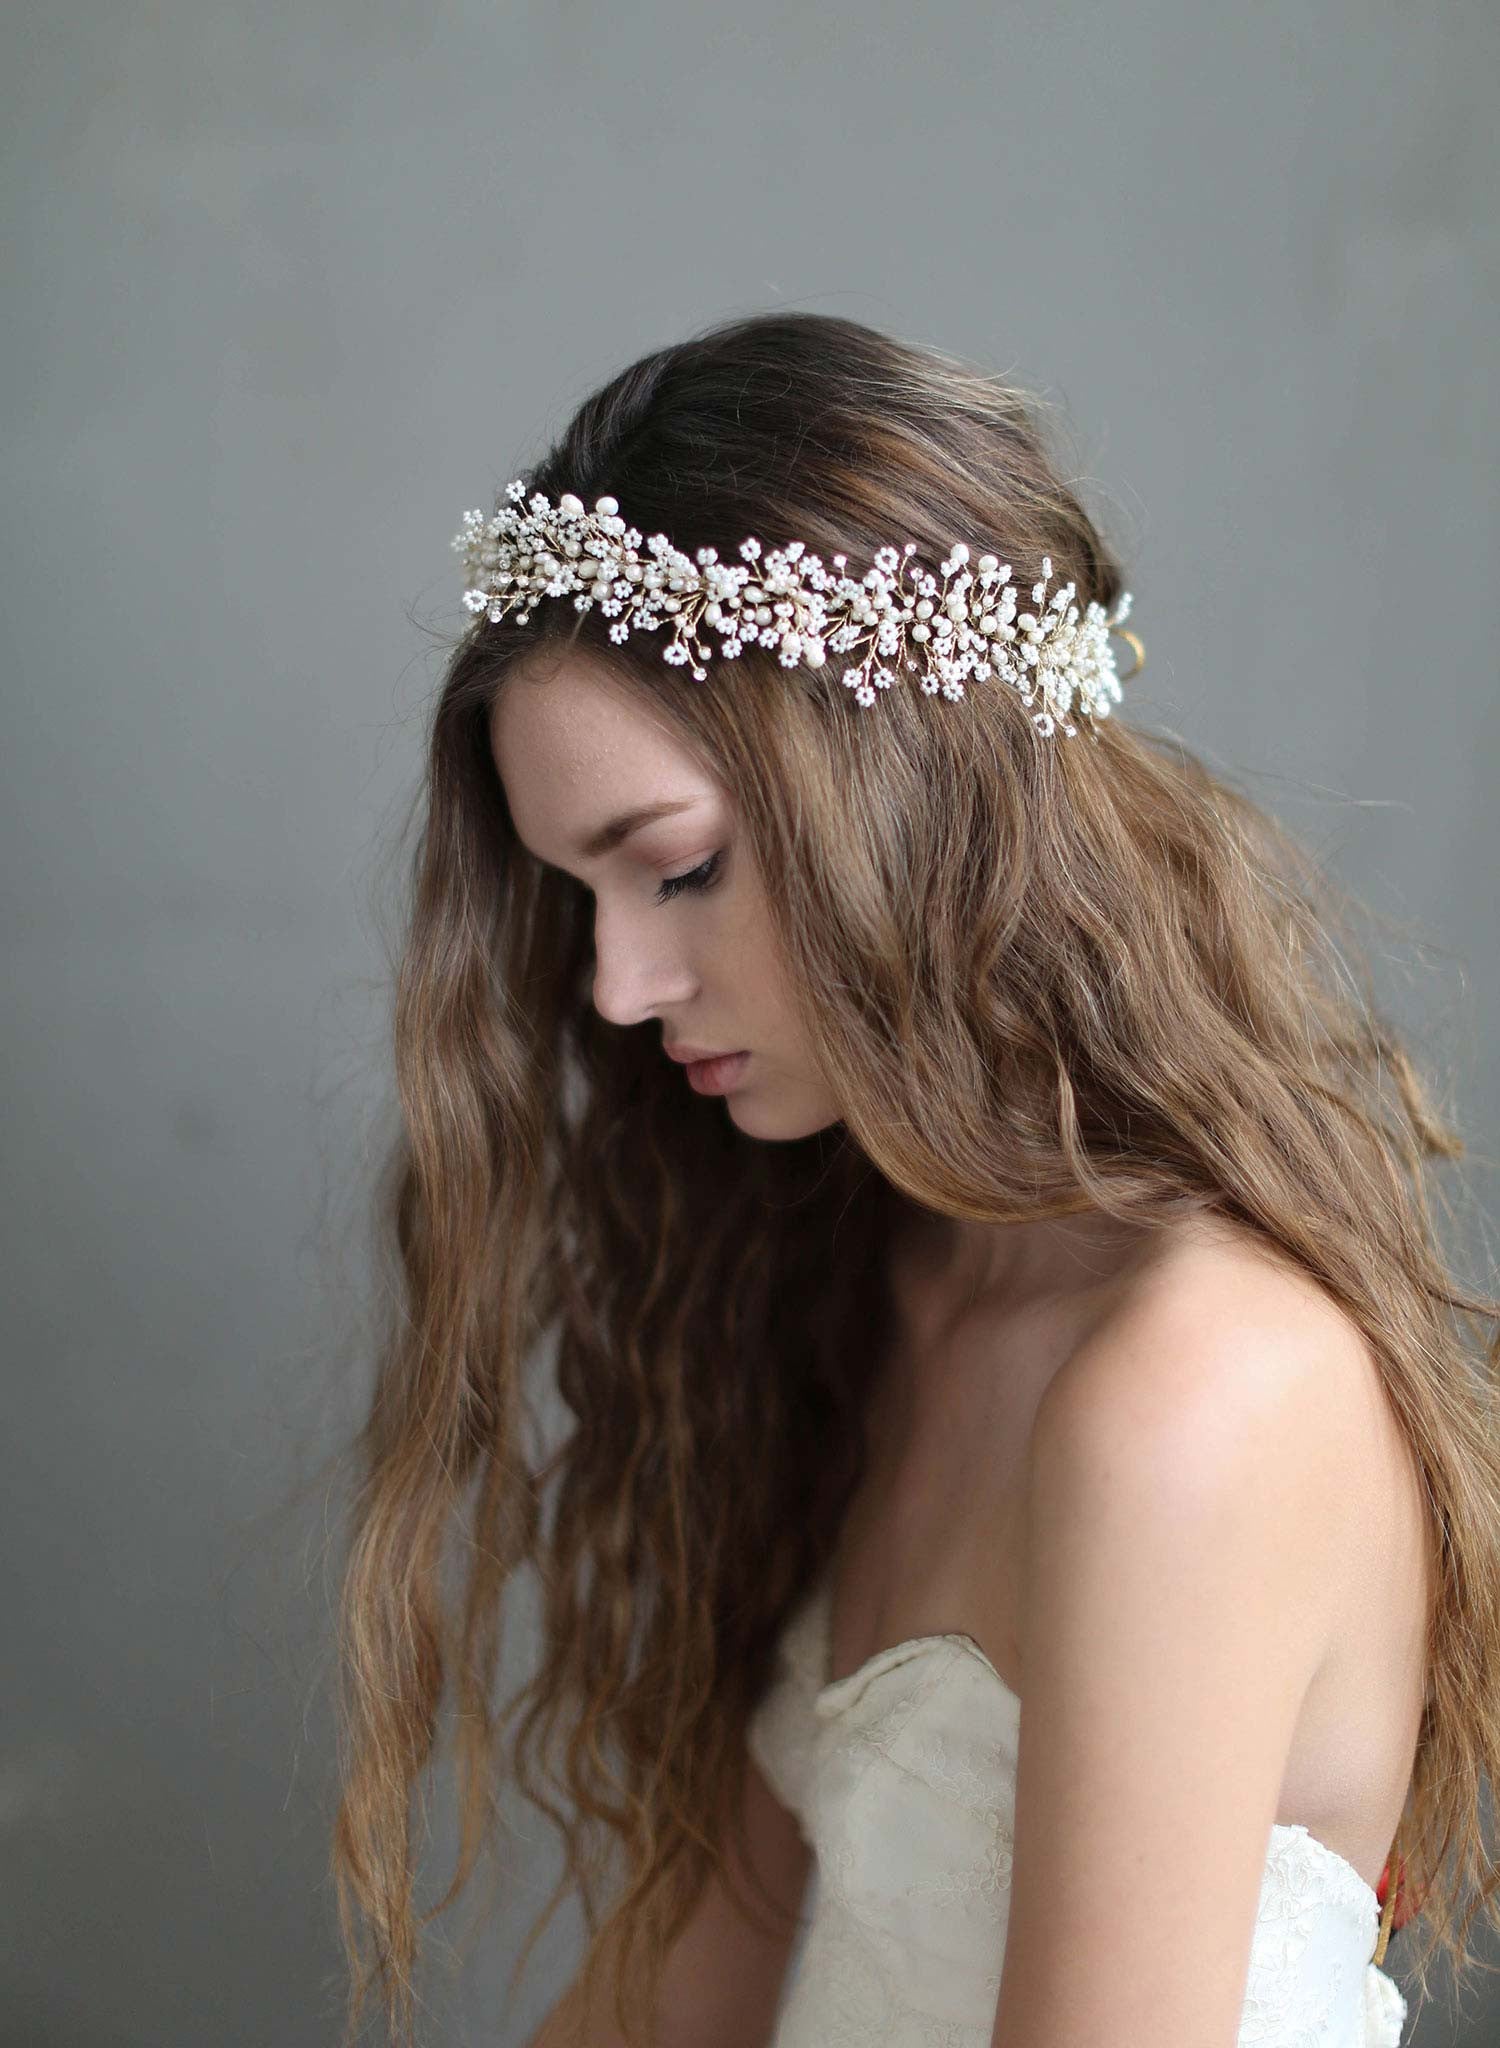 Headbands - Bridal headbands, Special occasion headbands ...